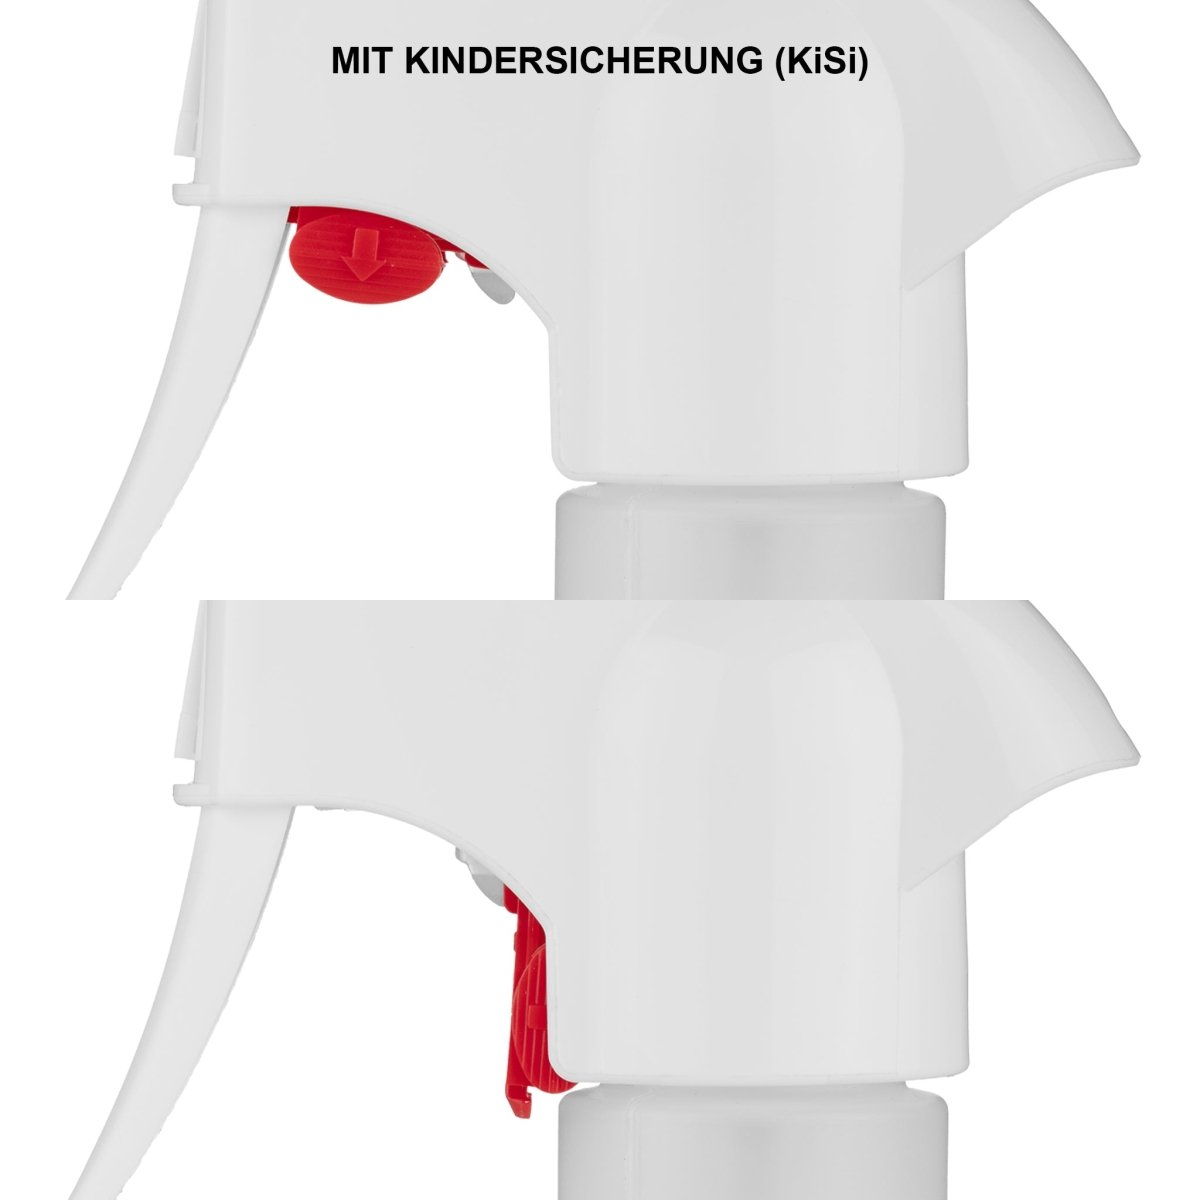 Pump-Sprühkopf mit Kindersicherung (KiSi) für Kunststoff-Systemflasche rund 500 ml - CLEANOFANT